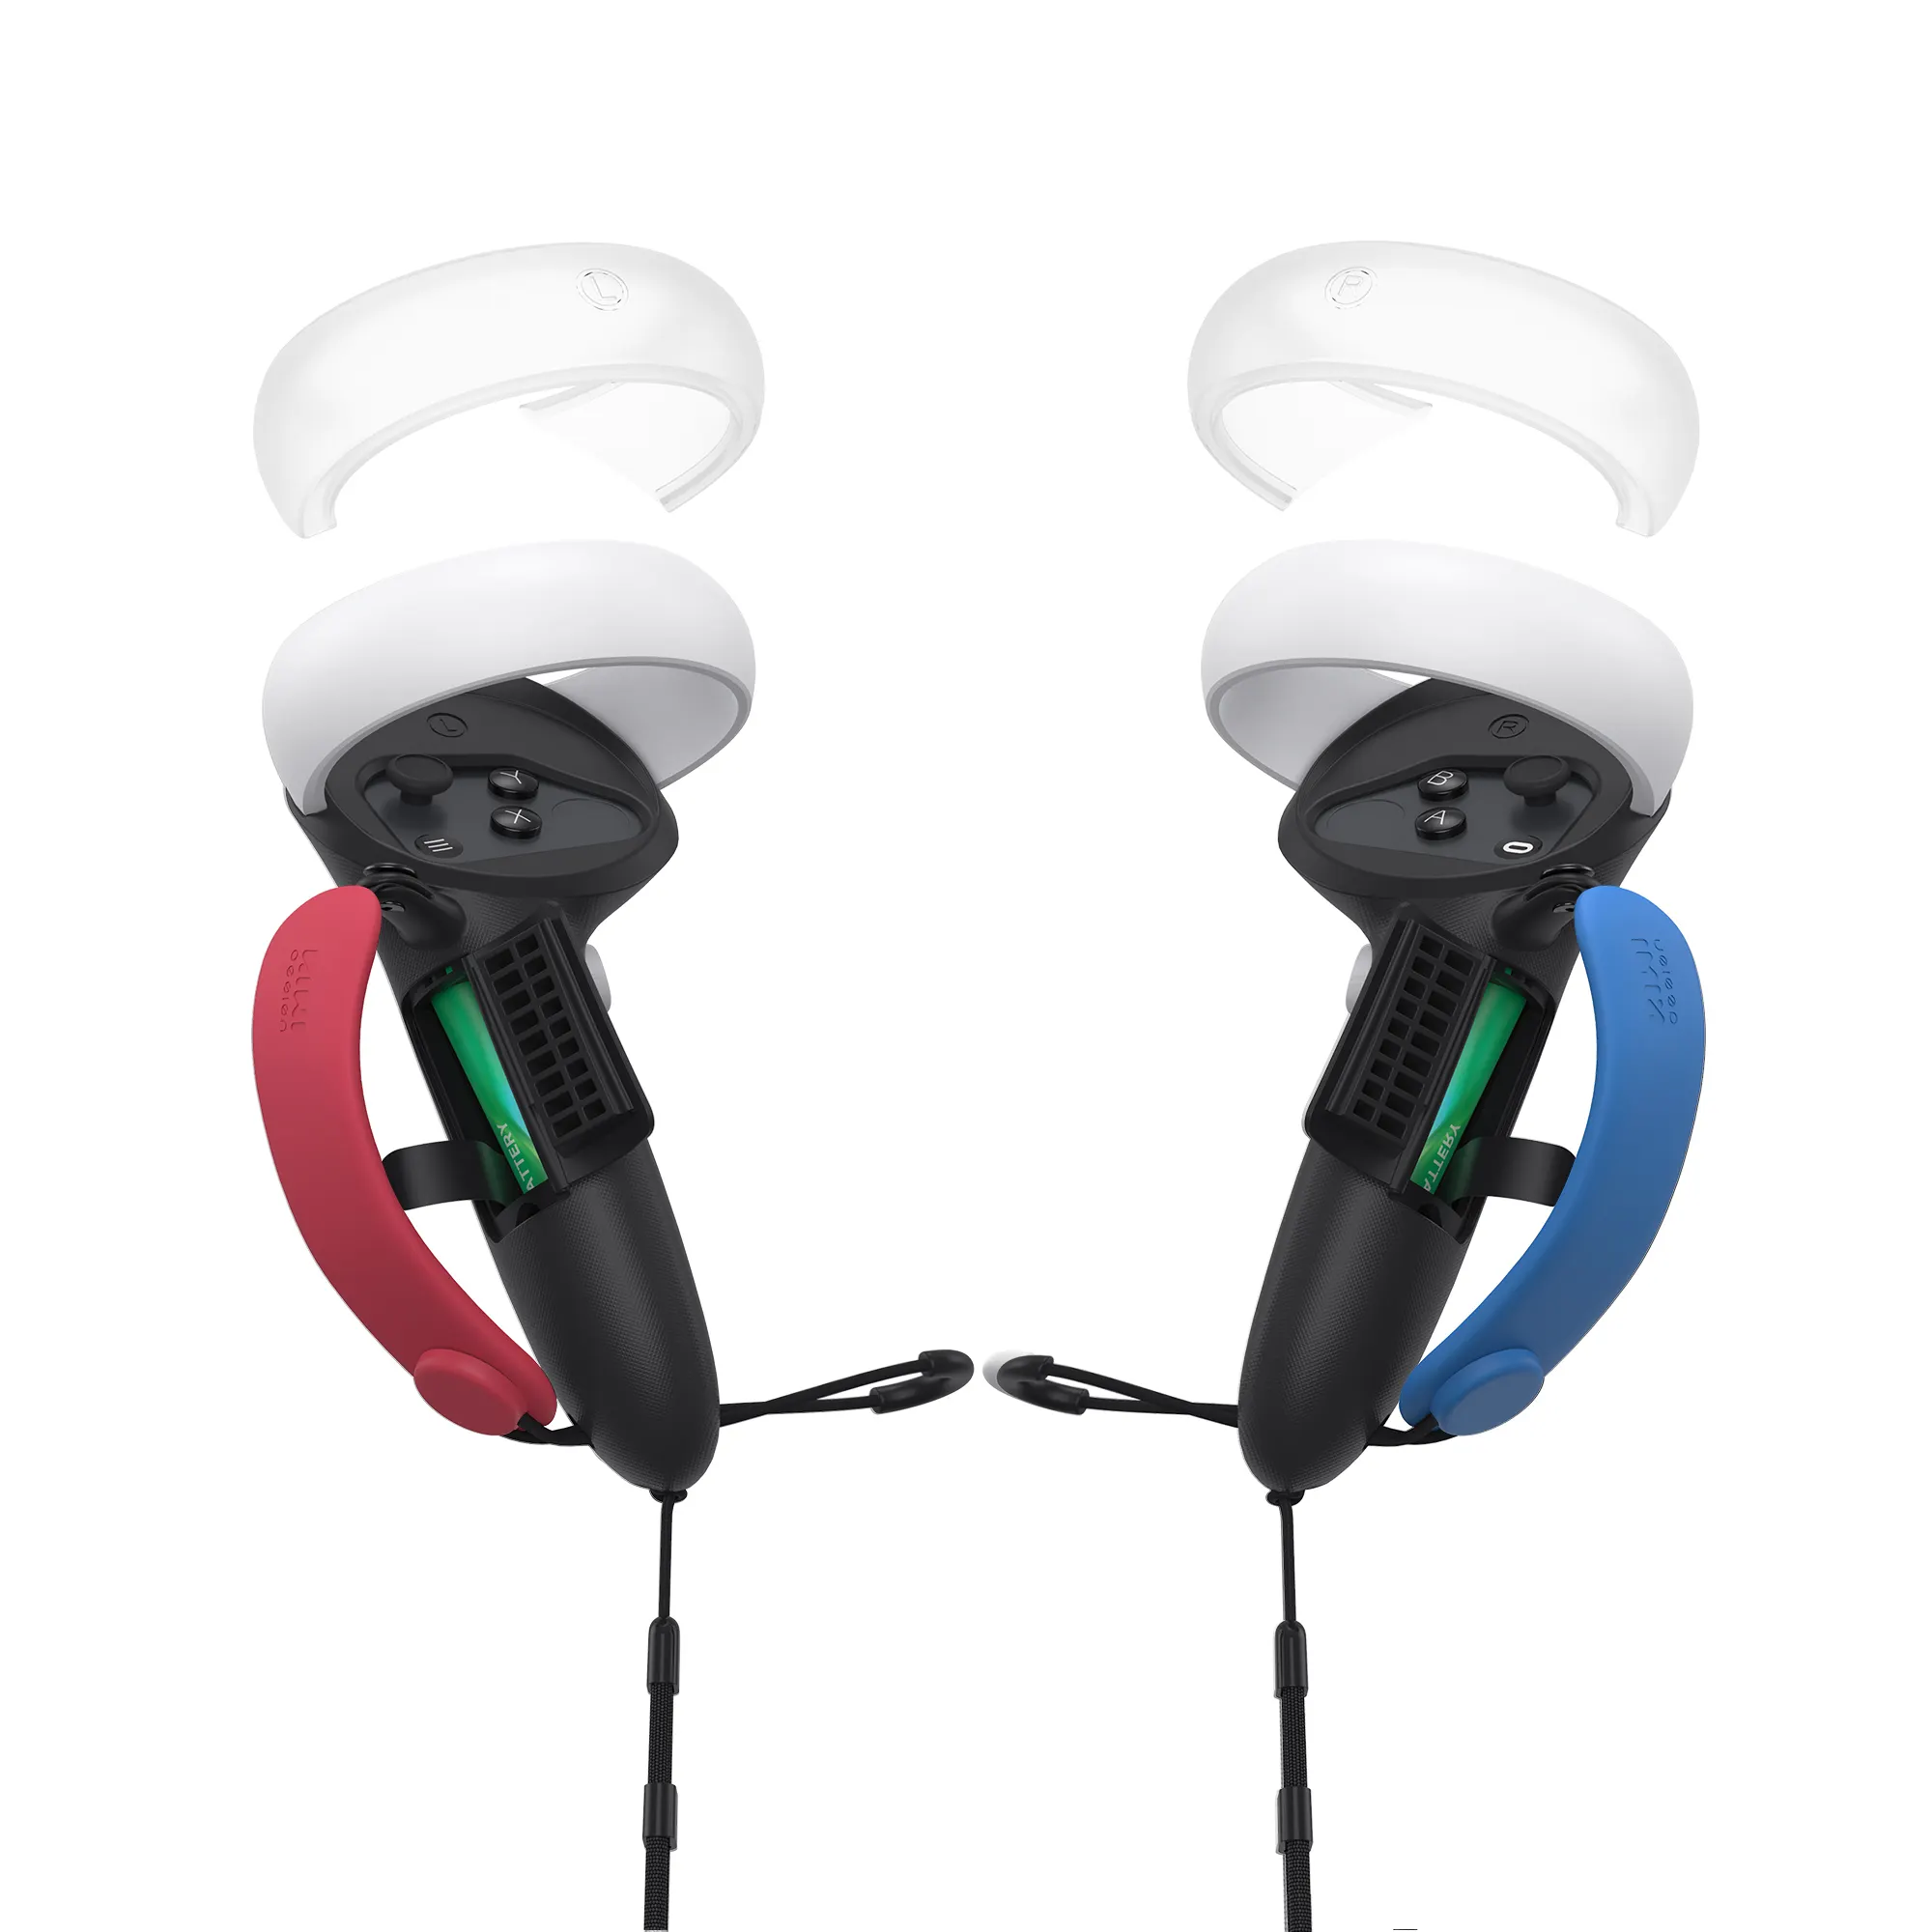 Penutup Grip aksesori VR silikon blok warna dengan tali penutup pengontrol Halo & pembuka pengganti baterai ocular Quest 2